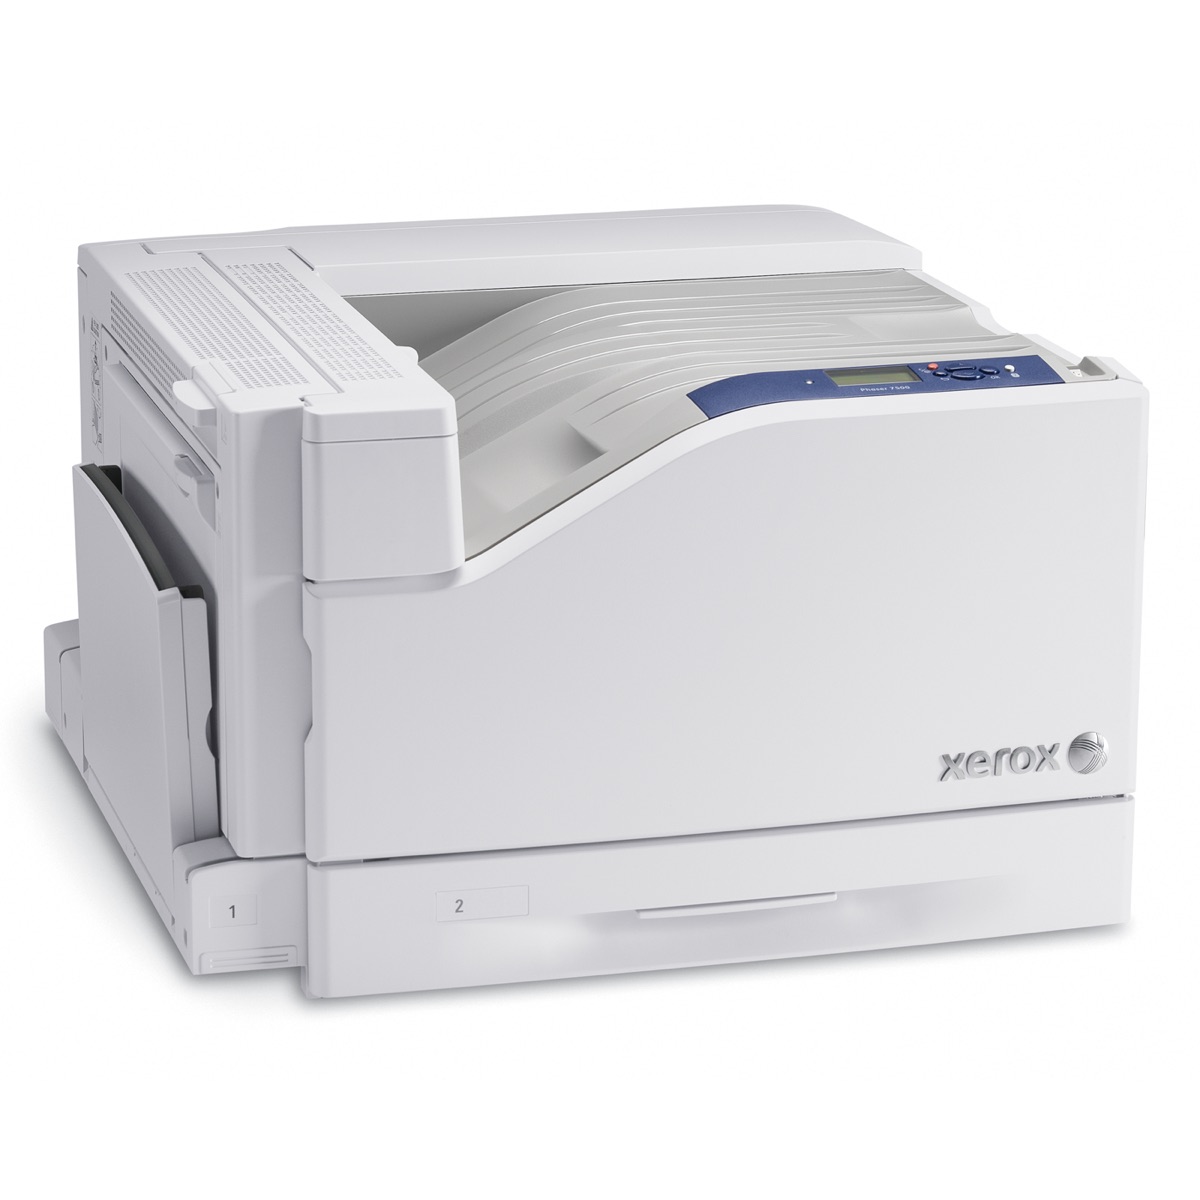 Xerox Printers:  The Xerox Phaser 7500 Series Printer